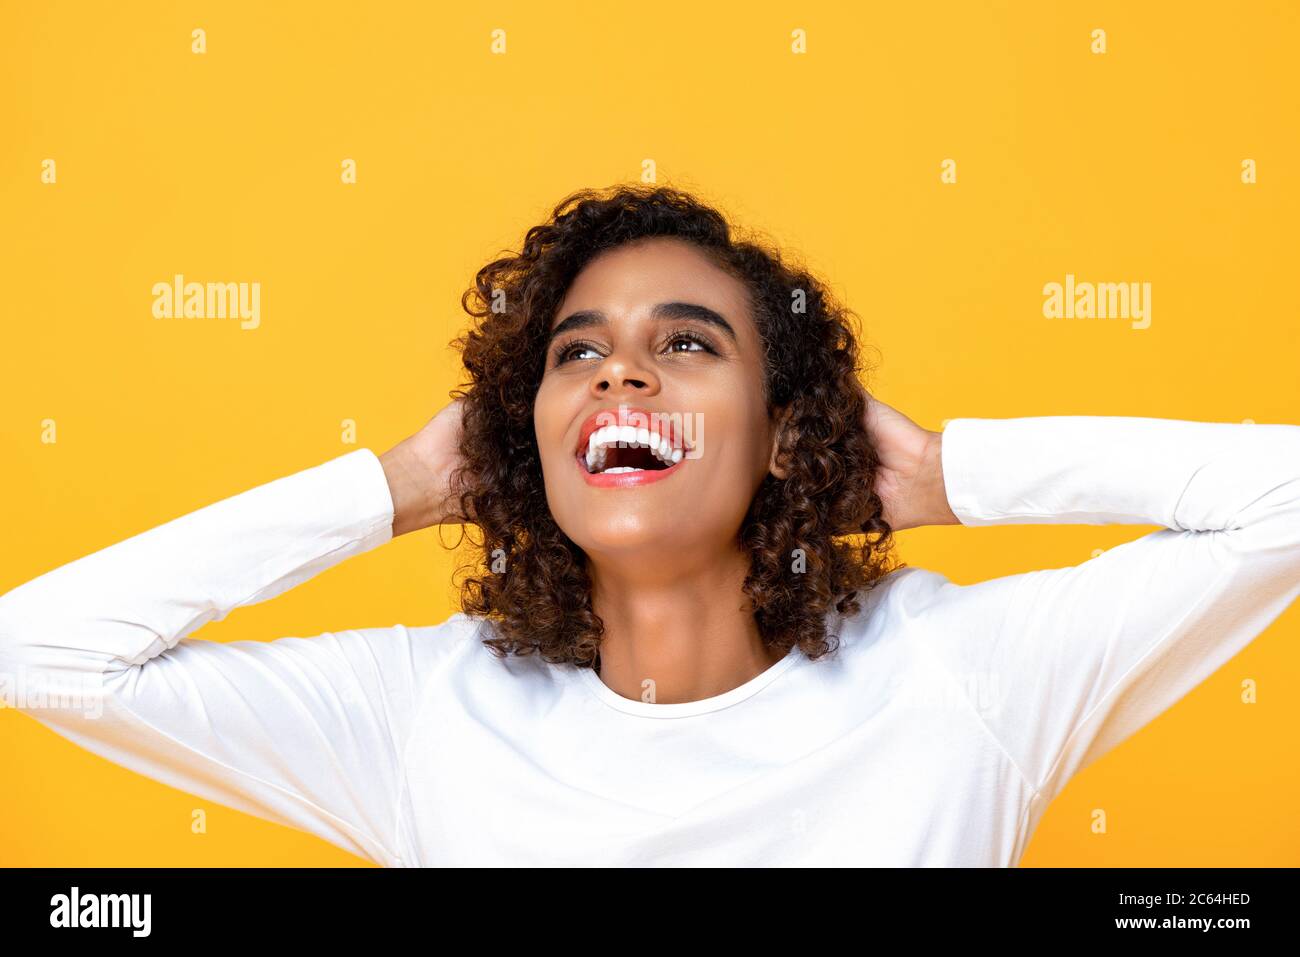 Nahaufnahme Porträt von fröhlichen jungen schönen afroamerikanischen Frau, die mit beiden Armen hinter dem Kopf in isolierten Studio gelben Hintergrund Stockfoto